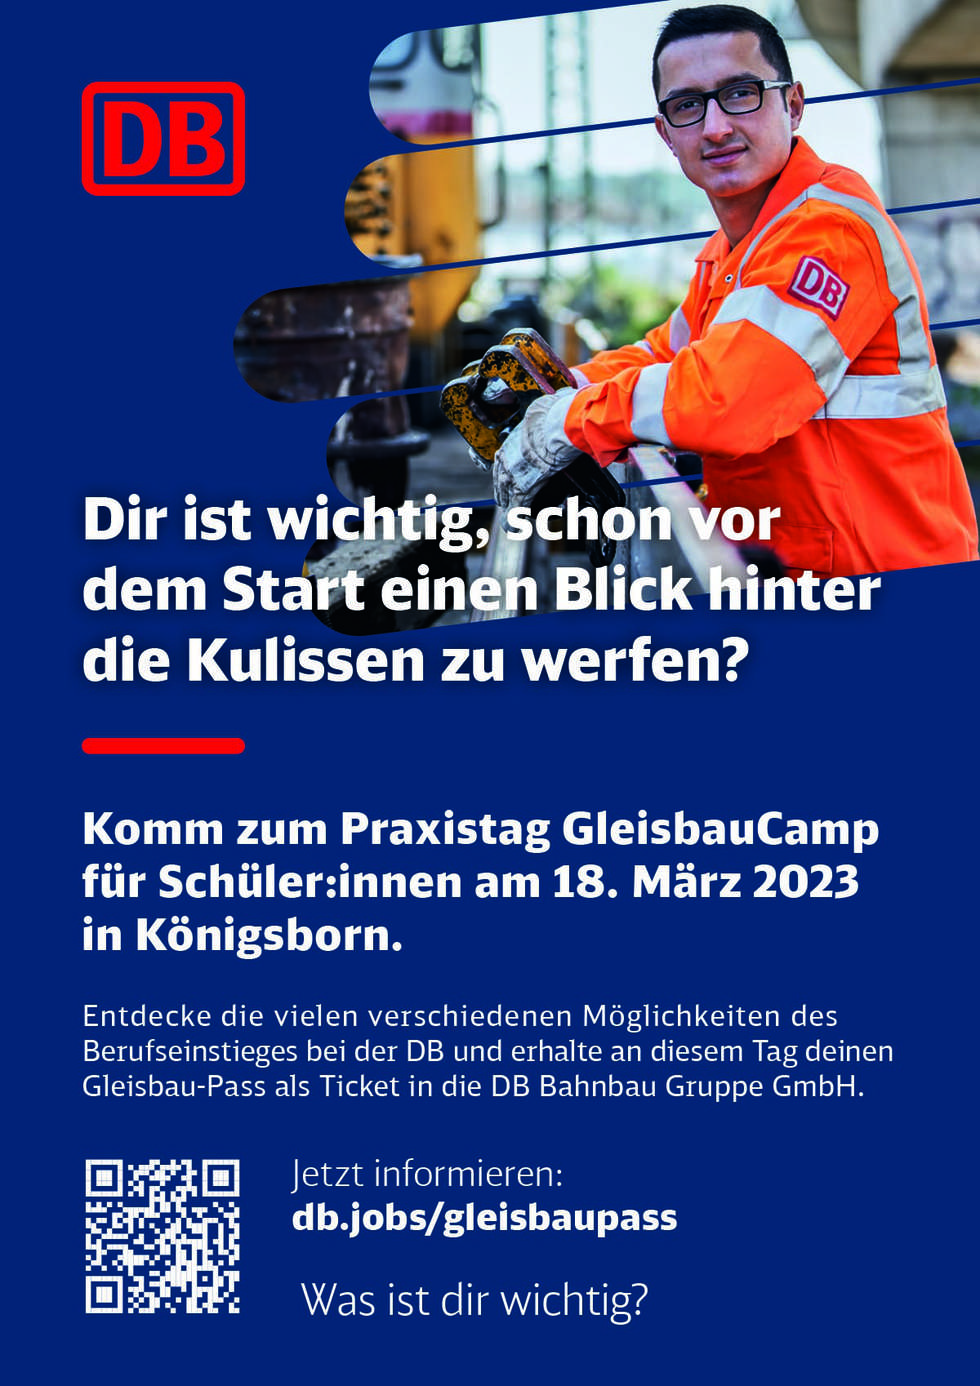 Deutsche Bahn - Praxistag Könogsborn_S udost_DK__94x133mm.jpg